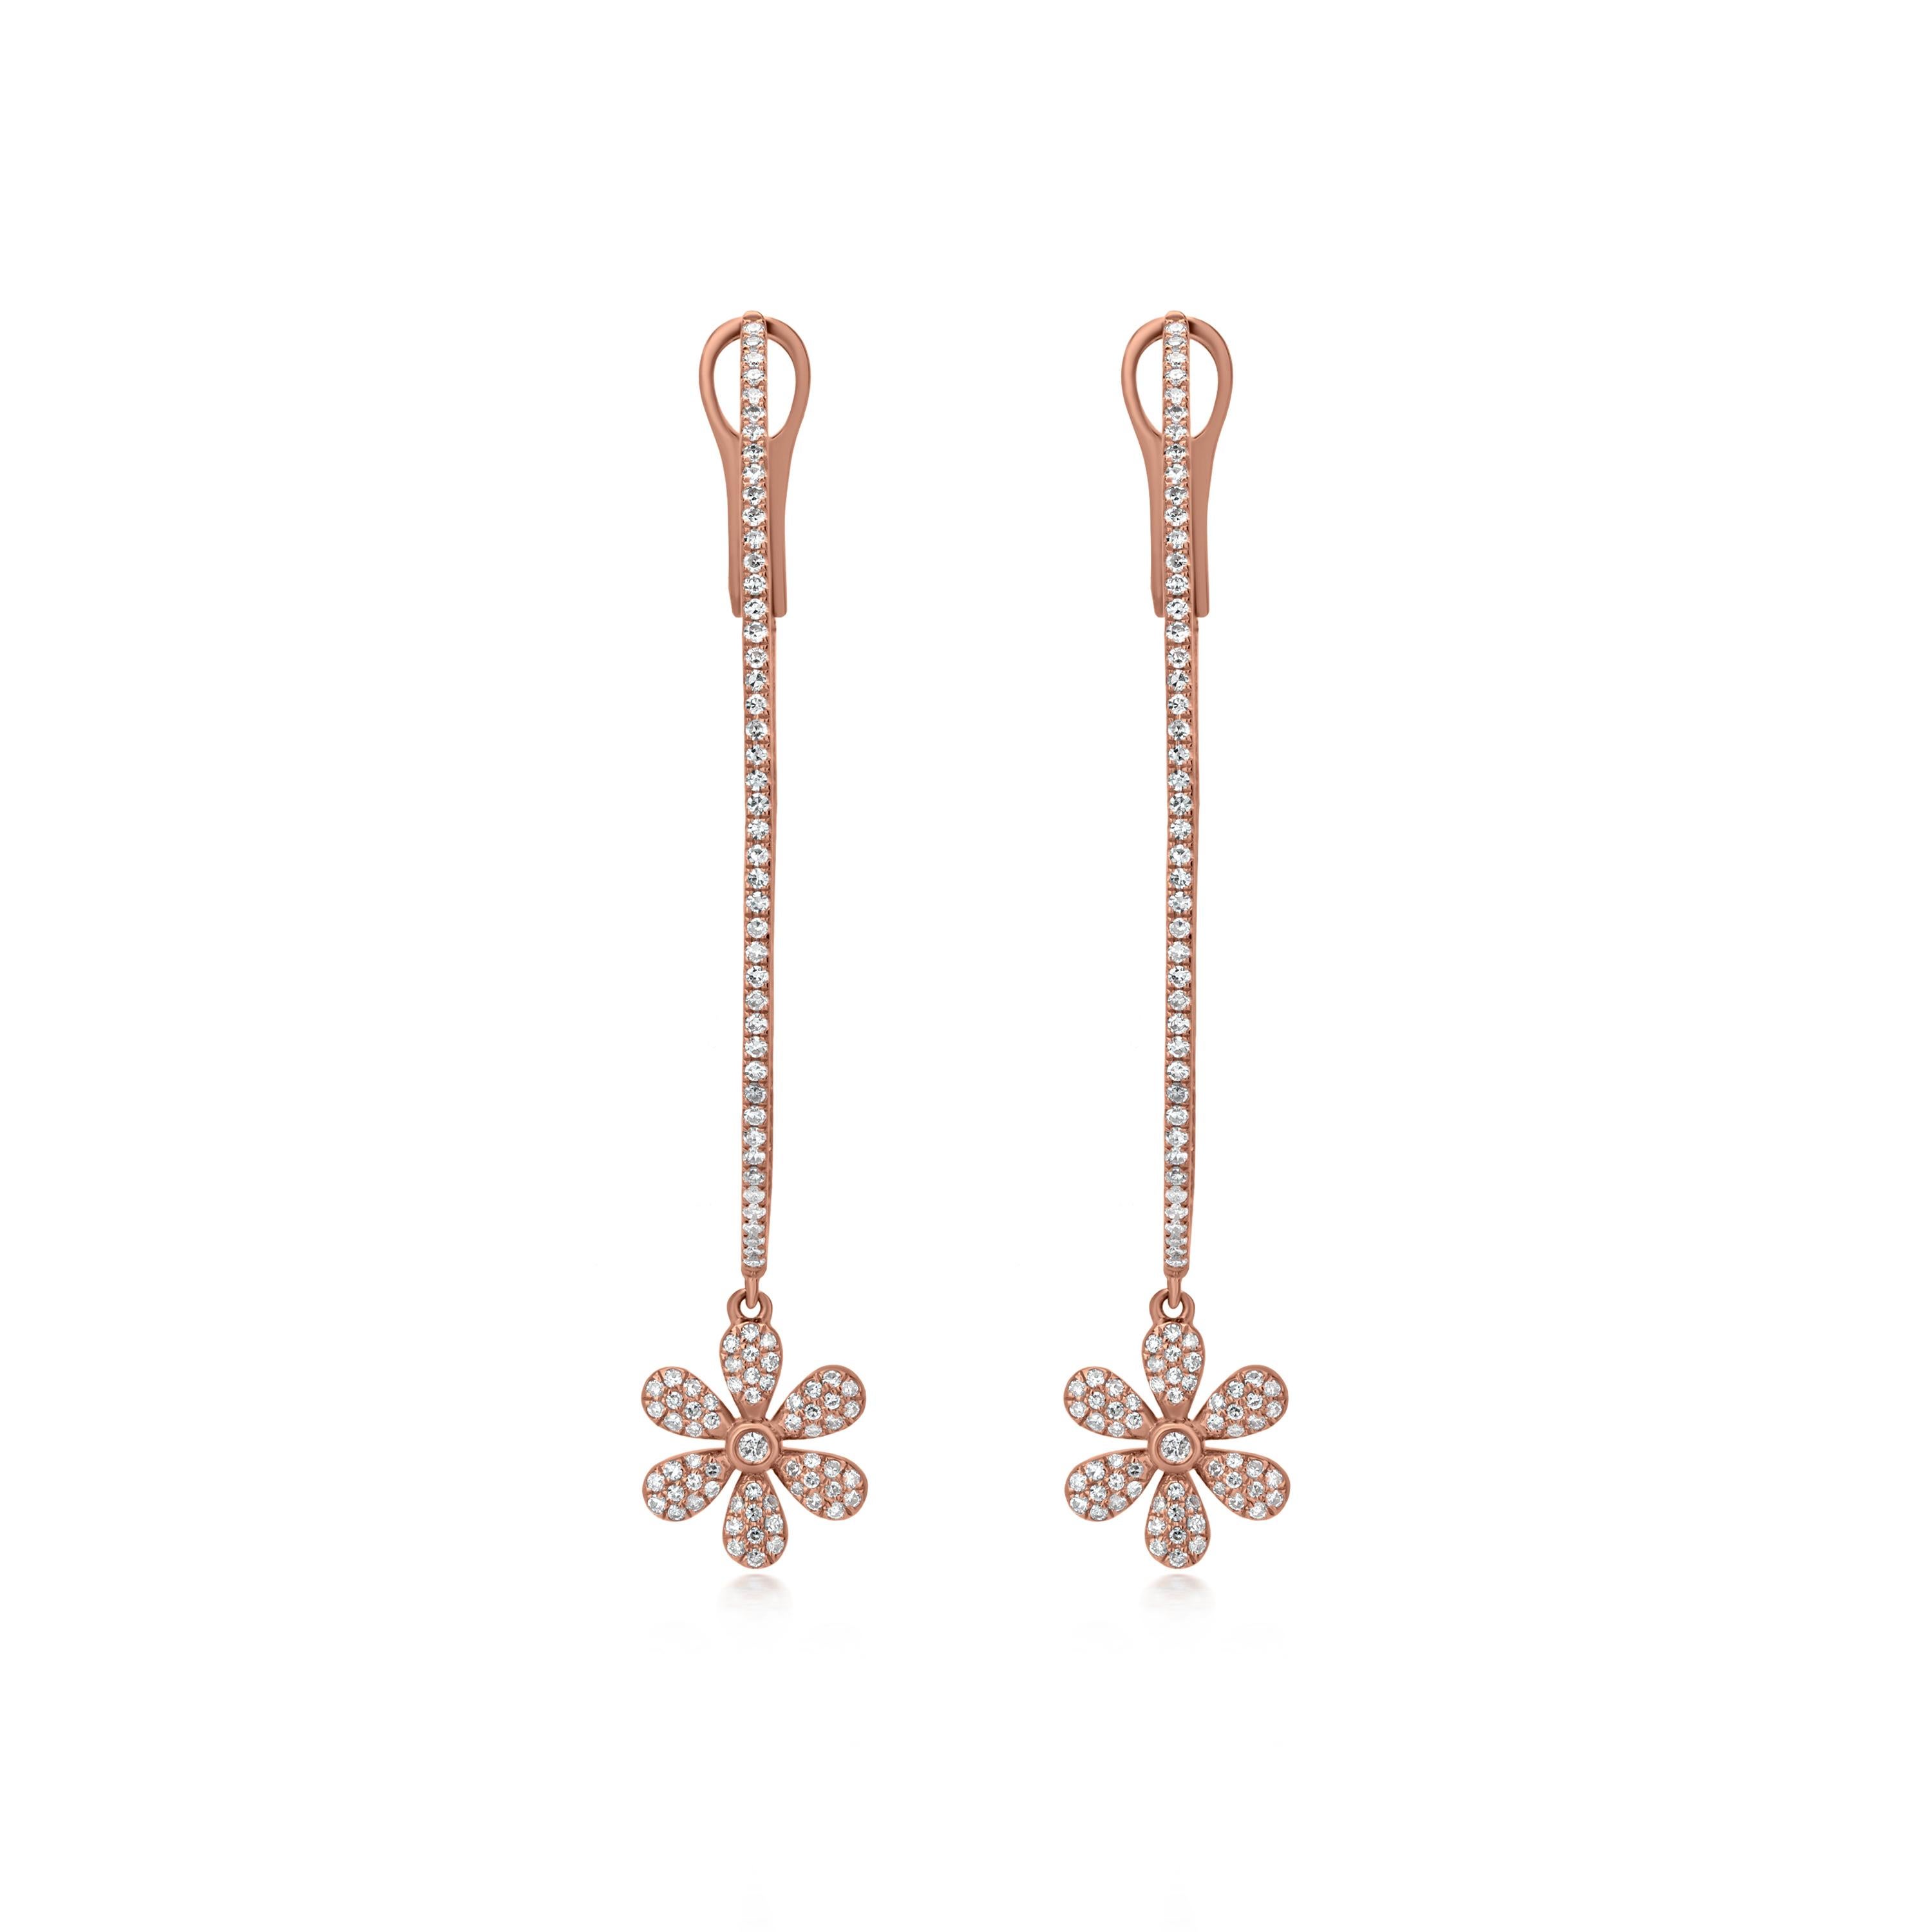 Une superbe paire de boucles d'oreilles Luxle en or rose 14k alignées avec 266 diamants ronds pavés ornant l'intérieur et l'extérieur, ainsi qu'un magnifique motif floral totalisant 0,86 carats de diamants encadrés en pavé, elle a été livrée avec